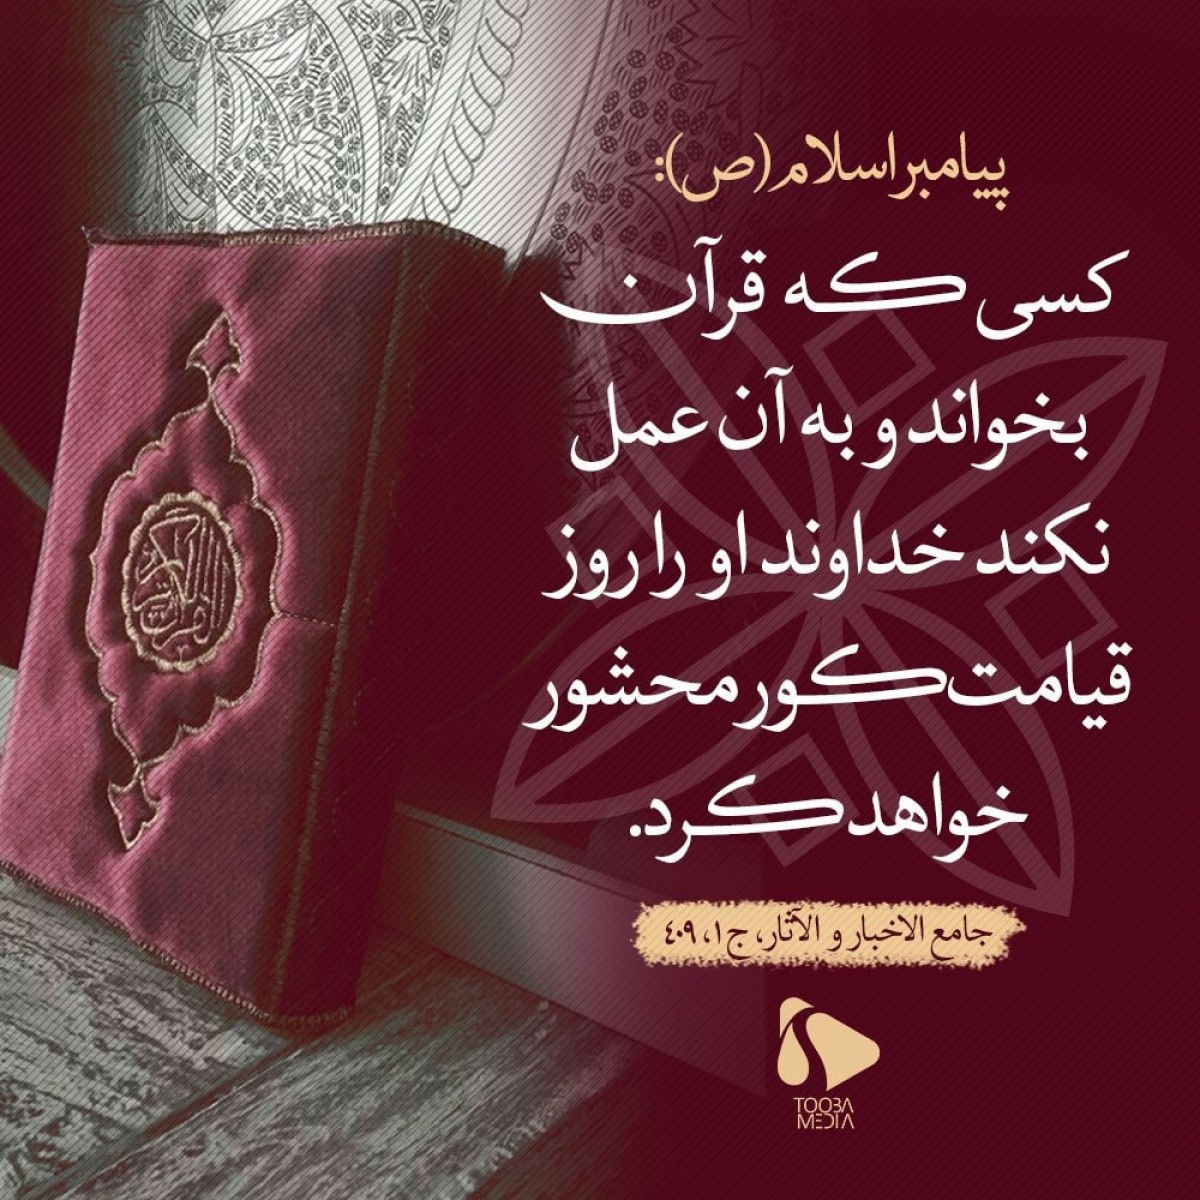 کسی که قرآن بخوانند و به آن عمل نکند